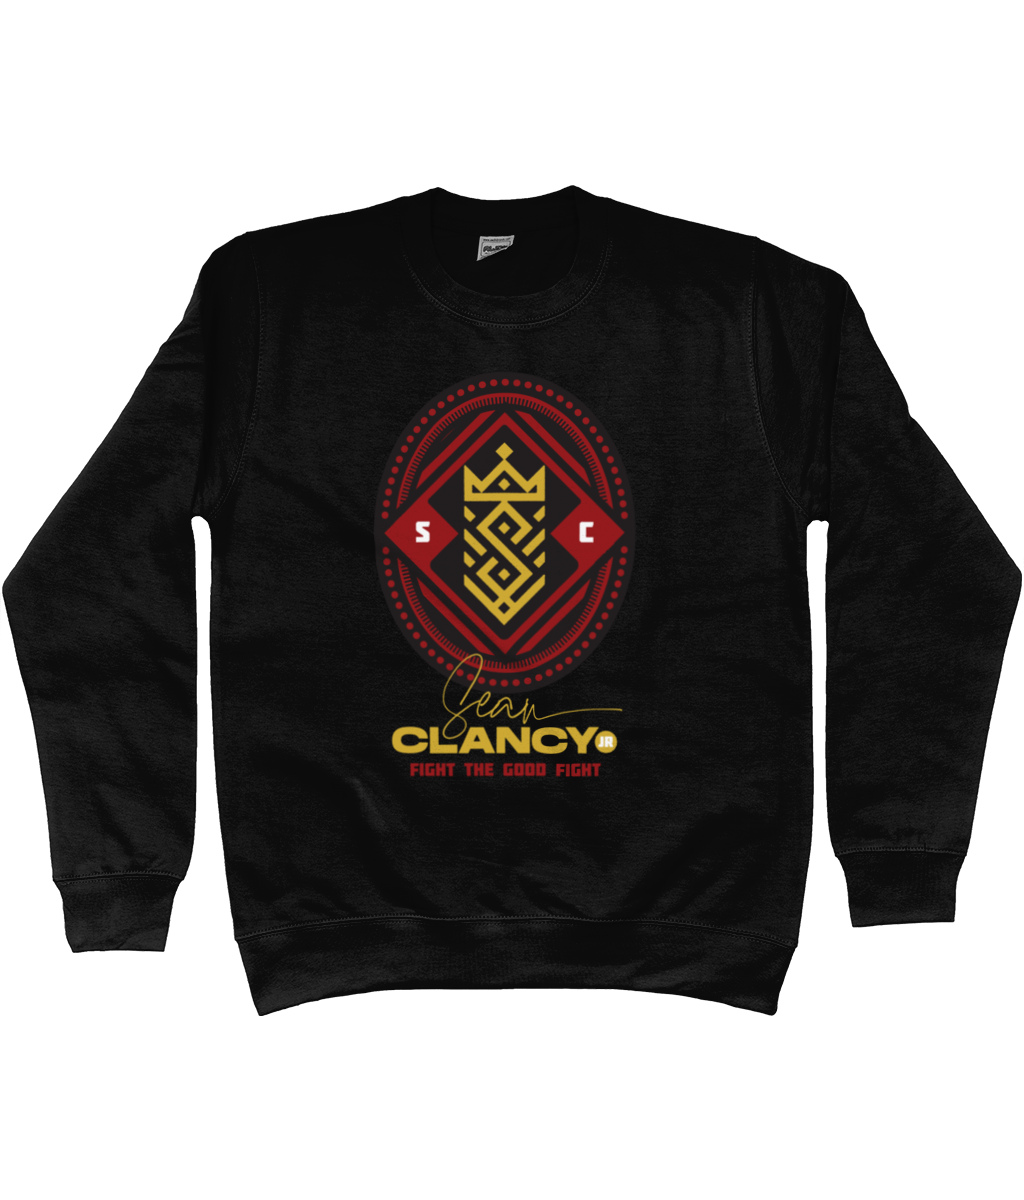 Sean Clancy Seal Sweatshirt